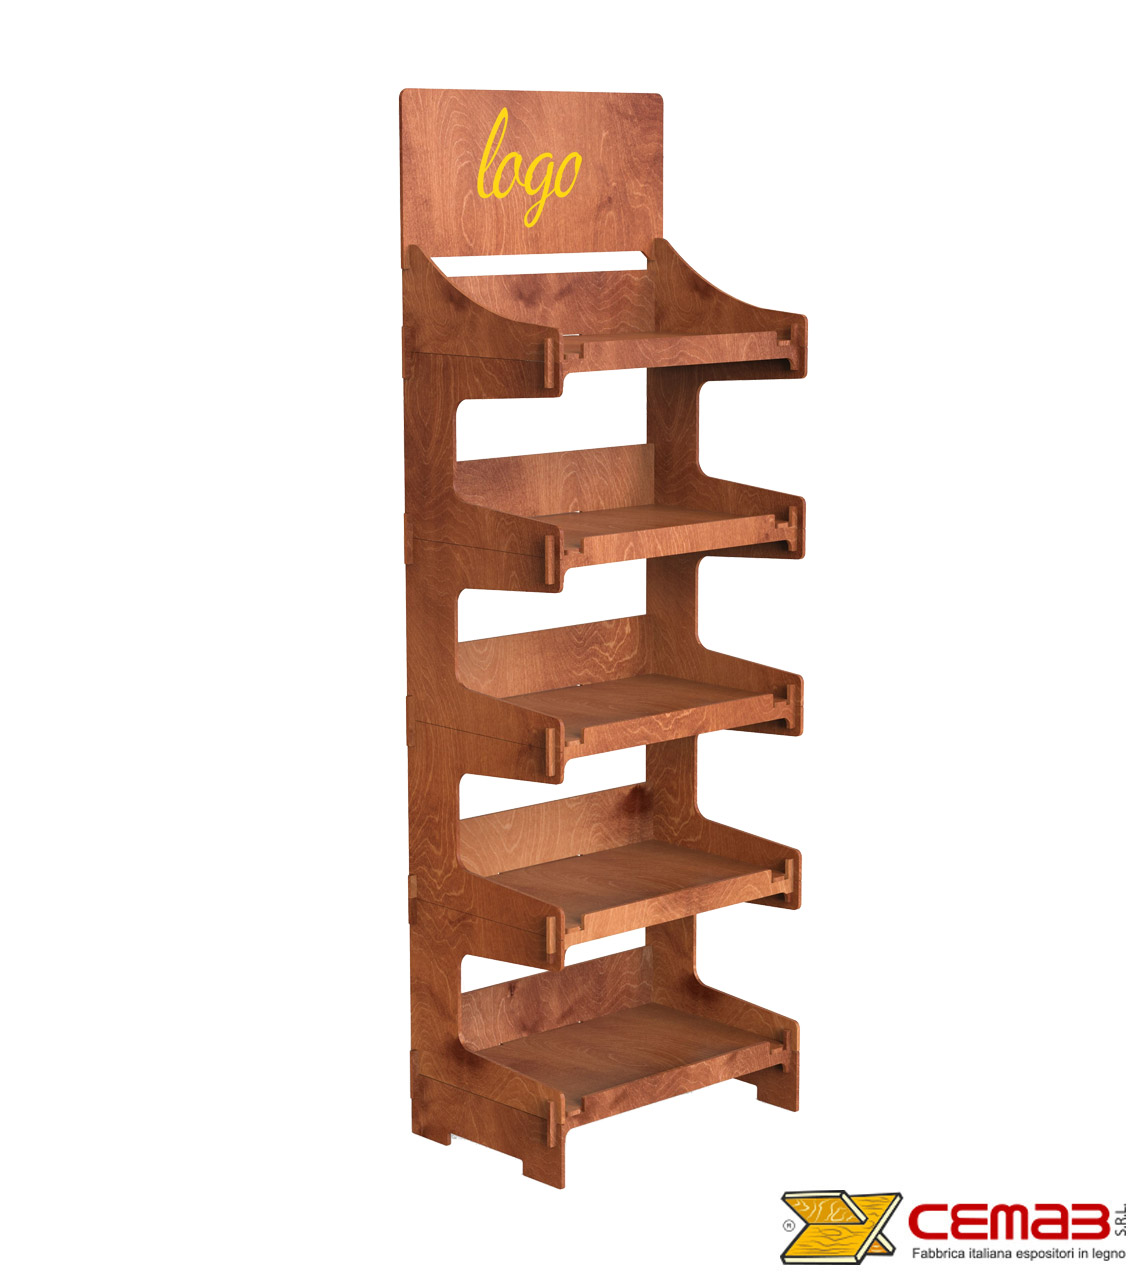 Espositore legno sbiancato grezzo. CM 68x65 H 150 vendita online